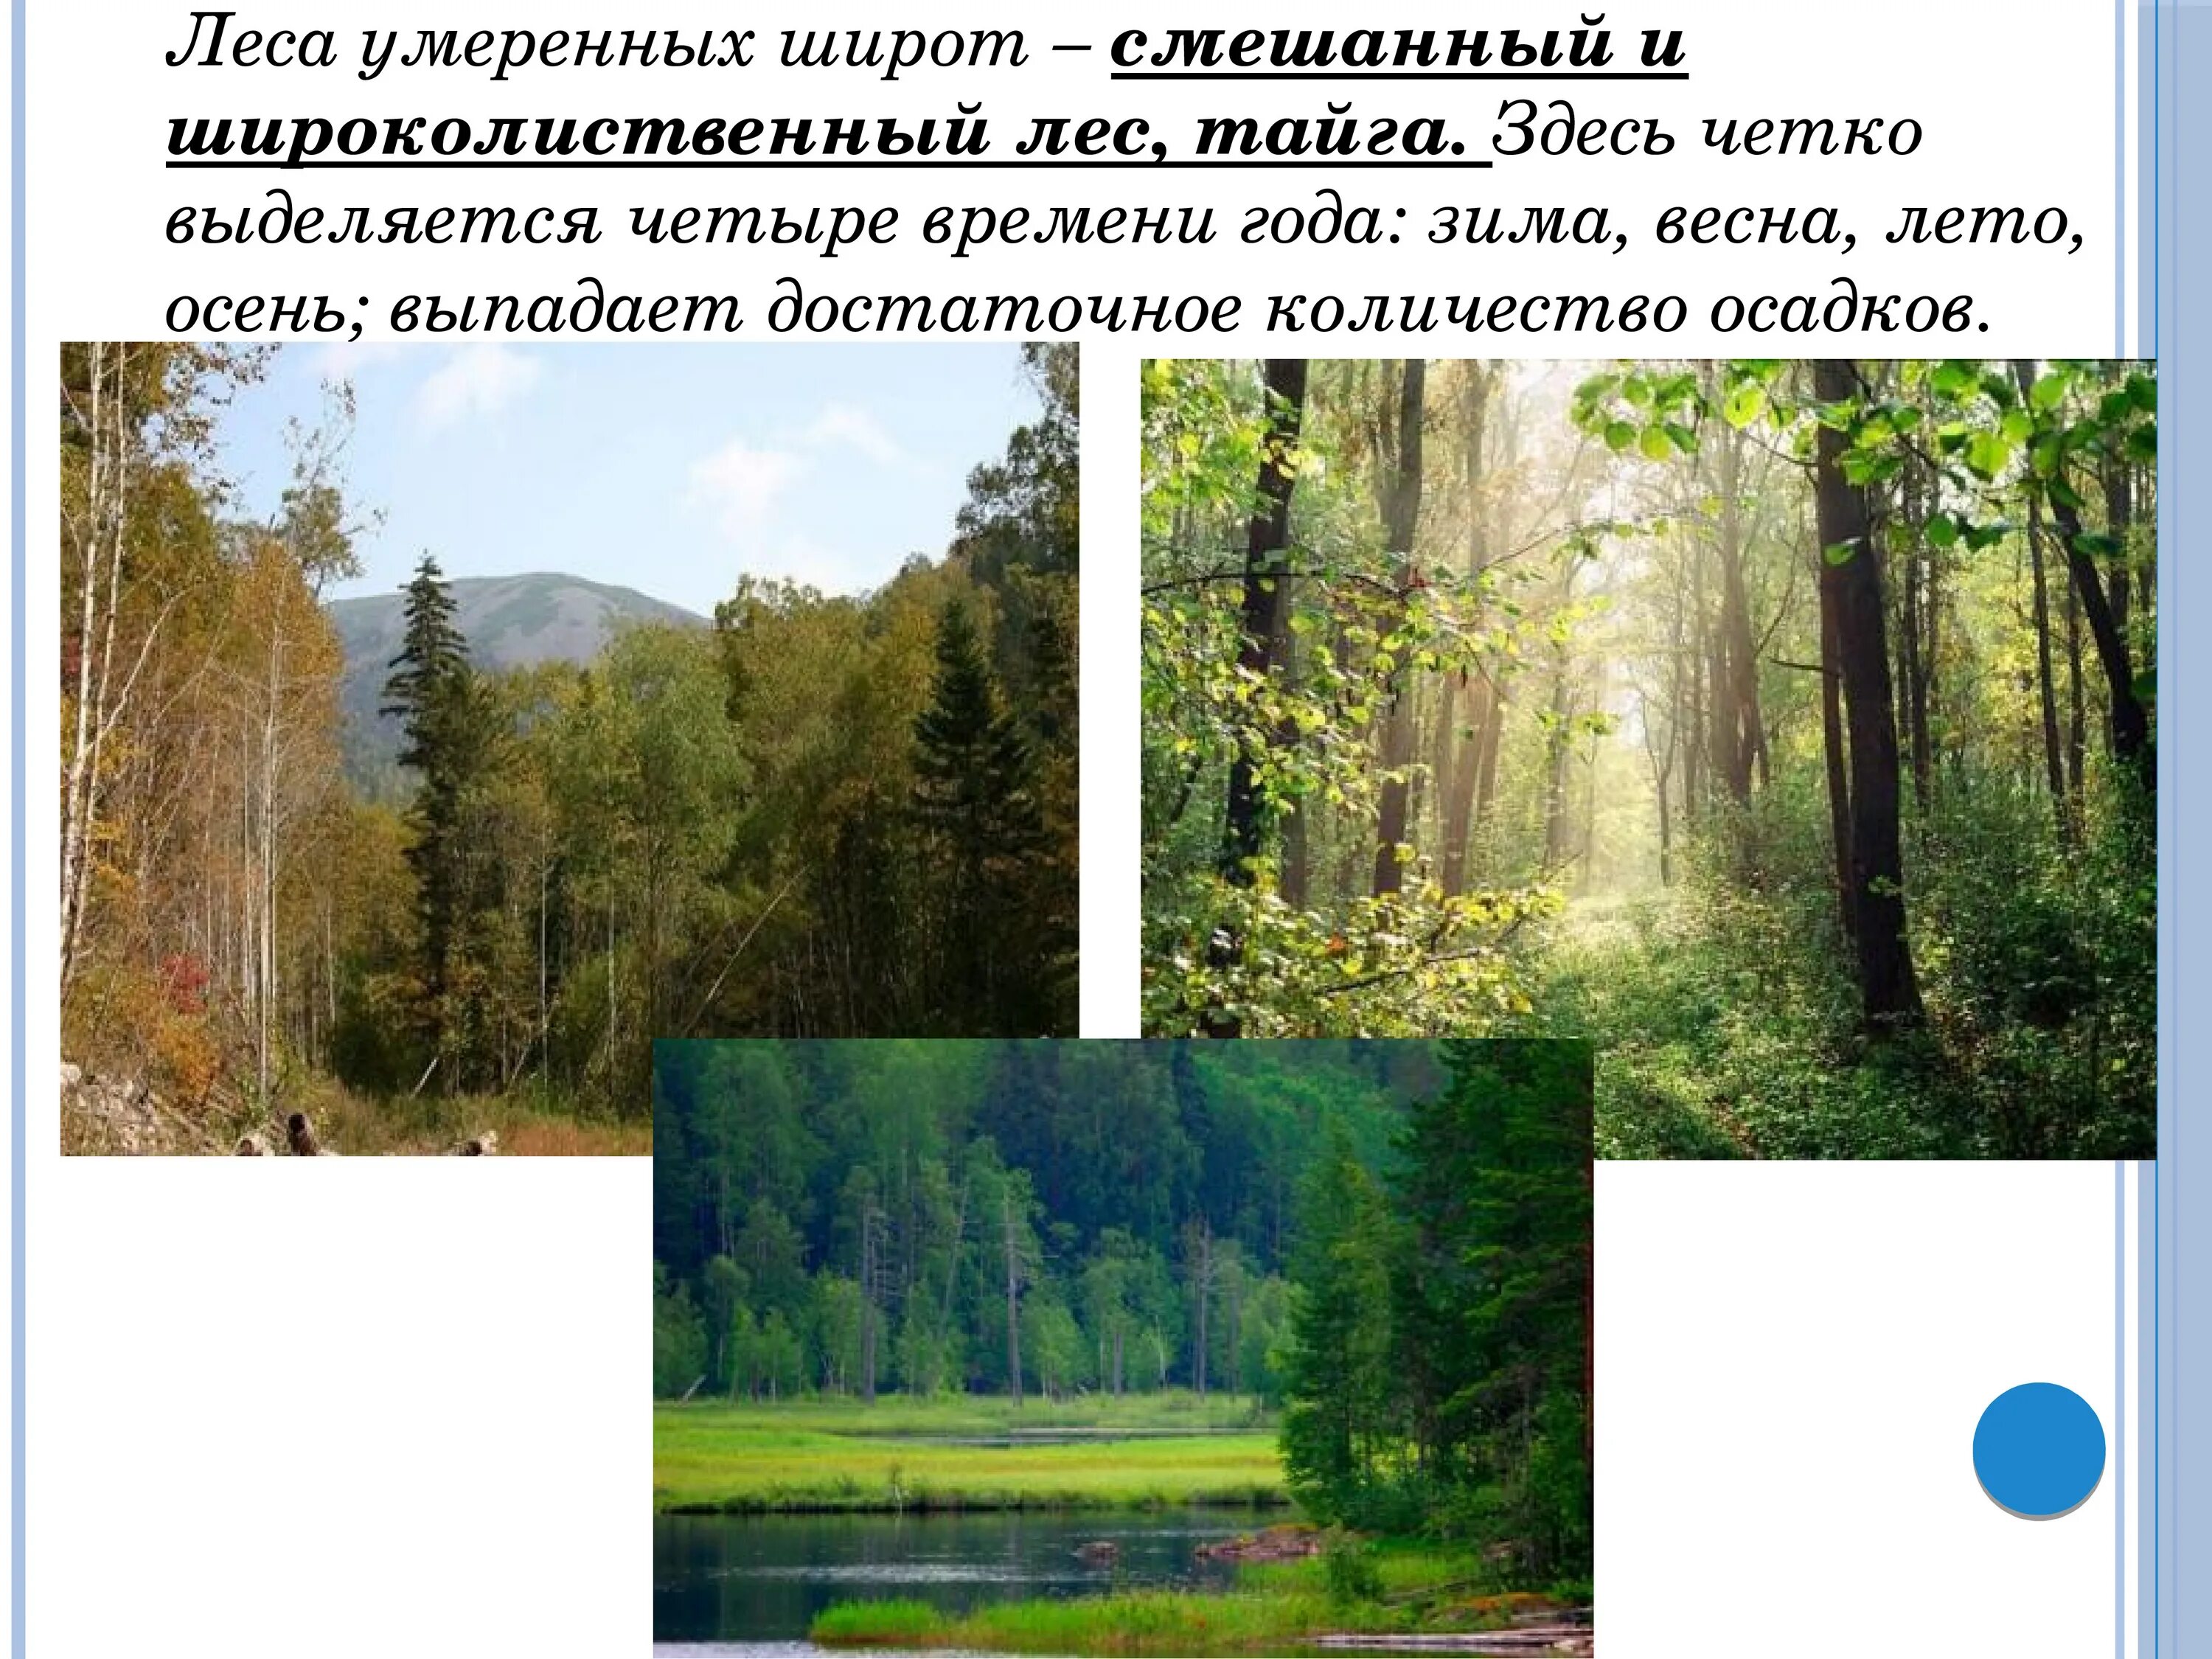 Природные особенности смешанных и широколиственных лесов. Зона лесов смешанные широколиственные. Зона зона смешанных и широколиственных лесов России. Природная зона широколиственных лесов России. Смешанные леса и широколиственные леса природная зона.